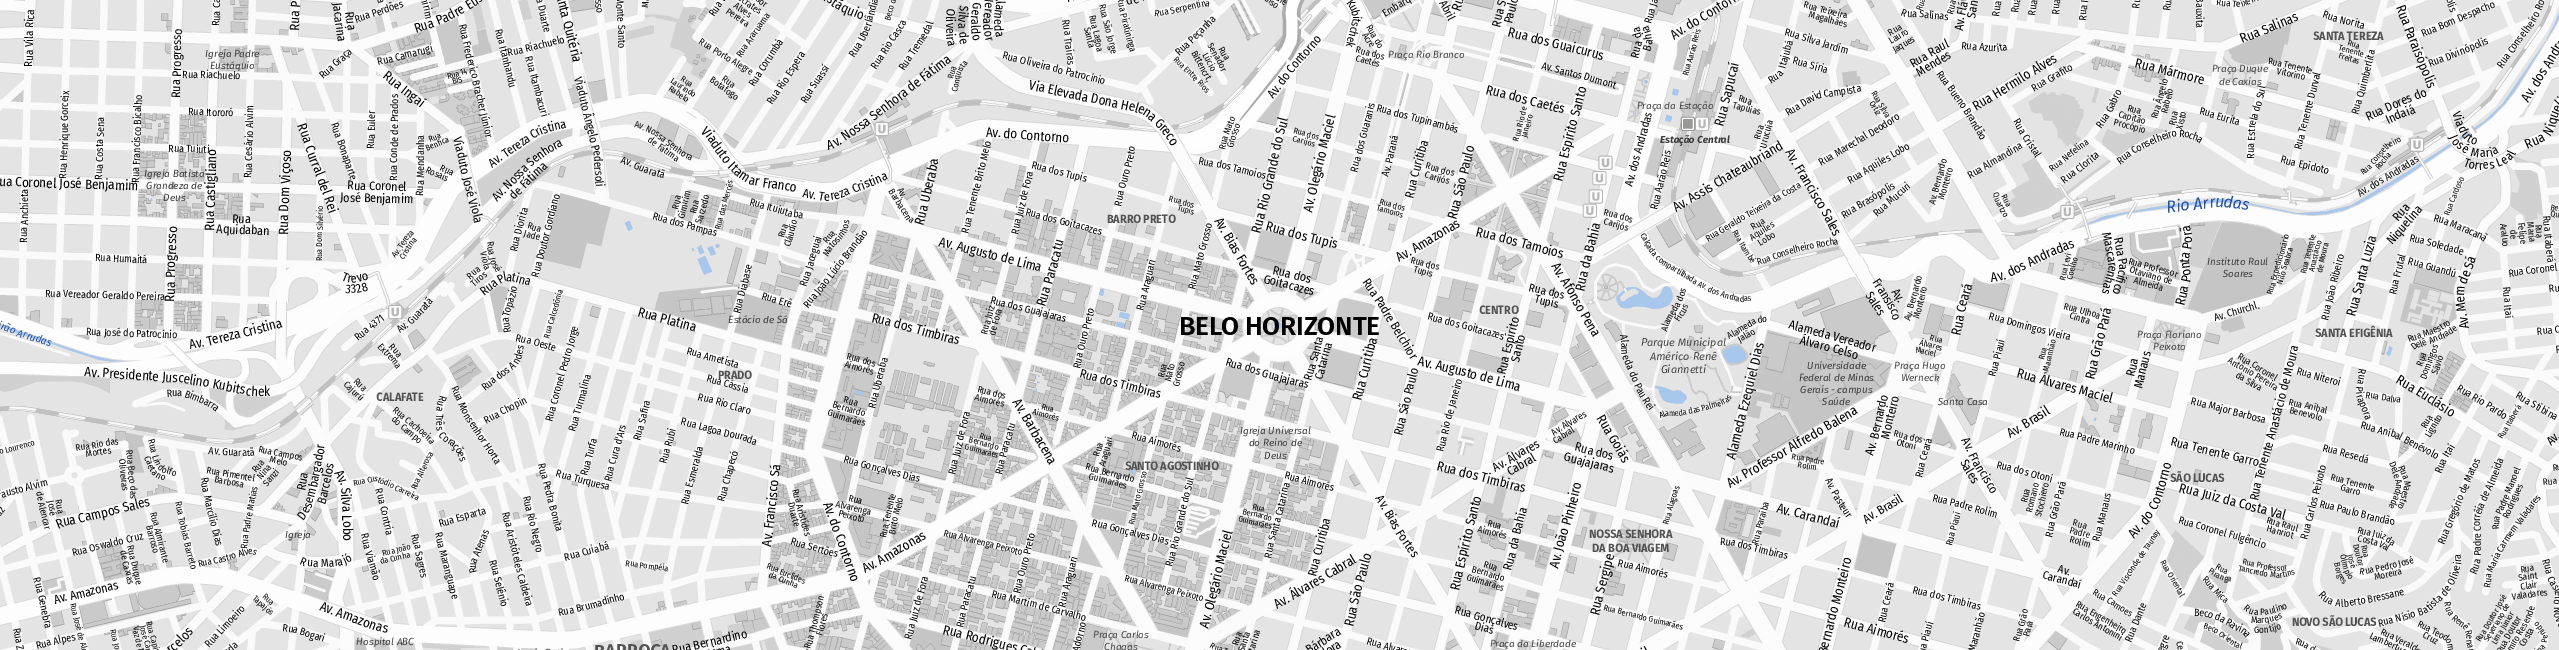 Stadtplan Belo Horizonte zum Downloaden.